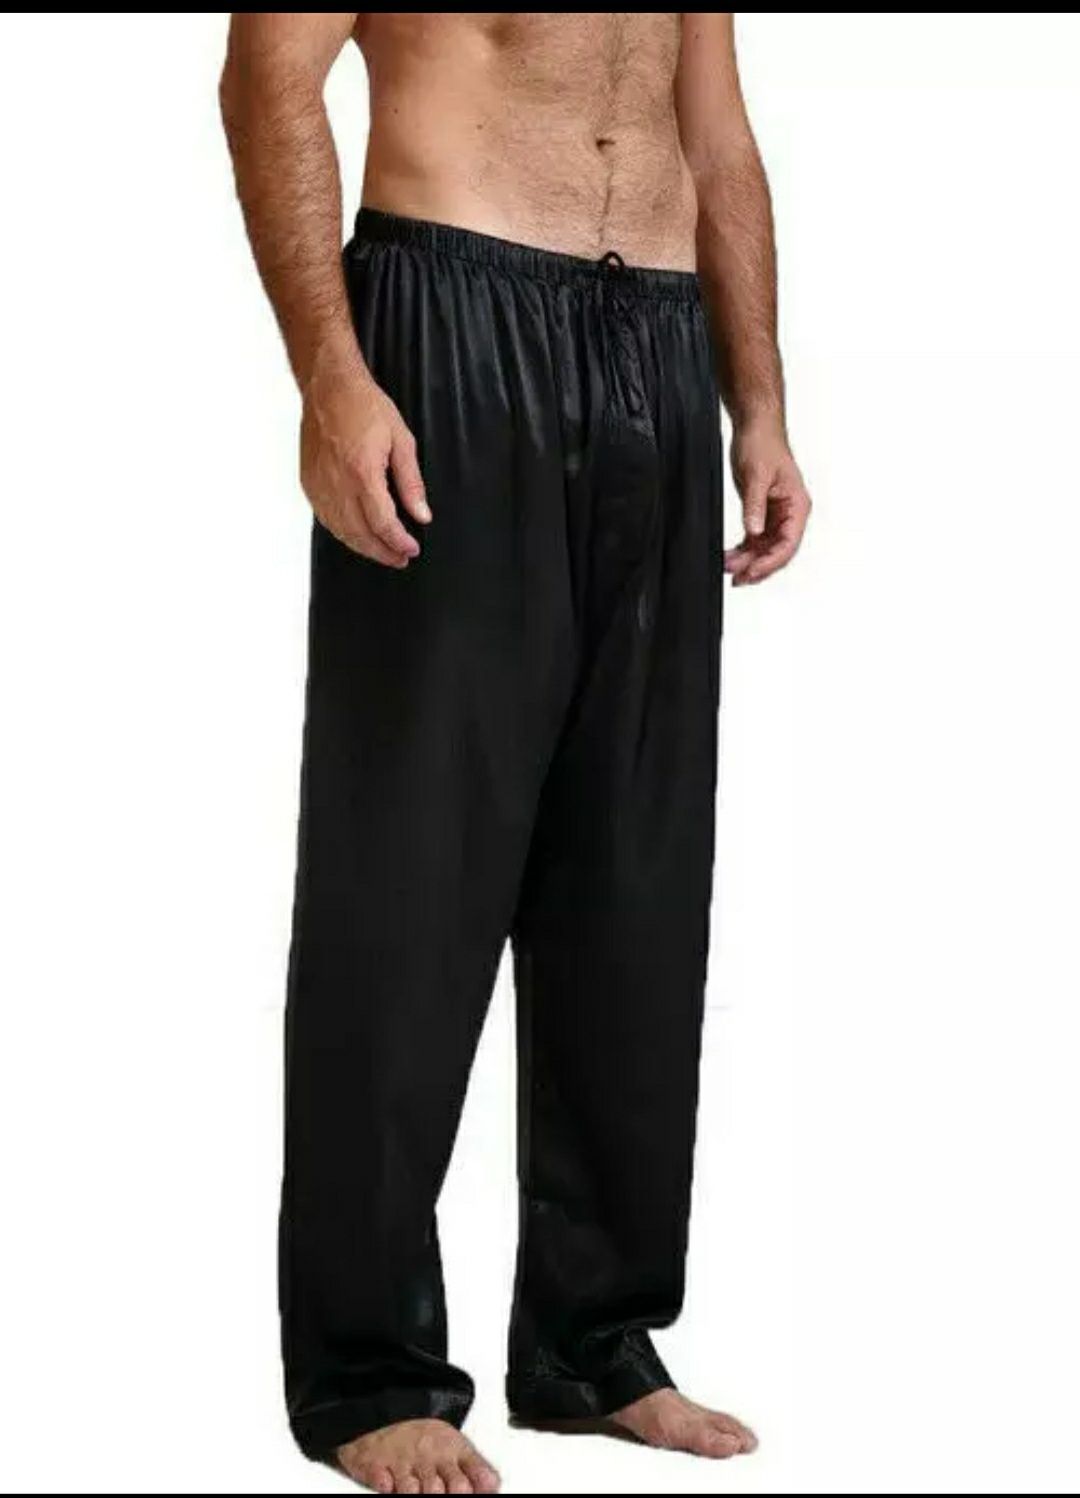 Sprzedam nowe spodnie piżamowe satynowe męskie rozmiar L i XL